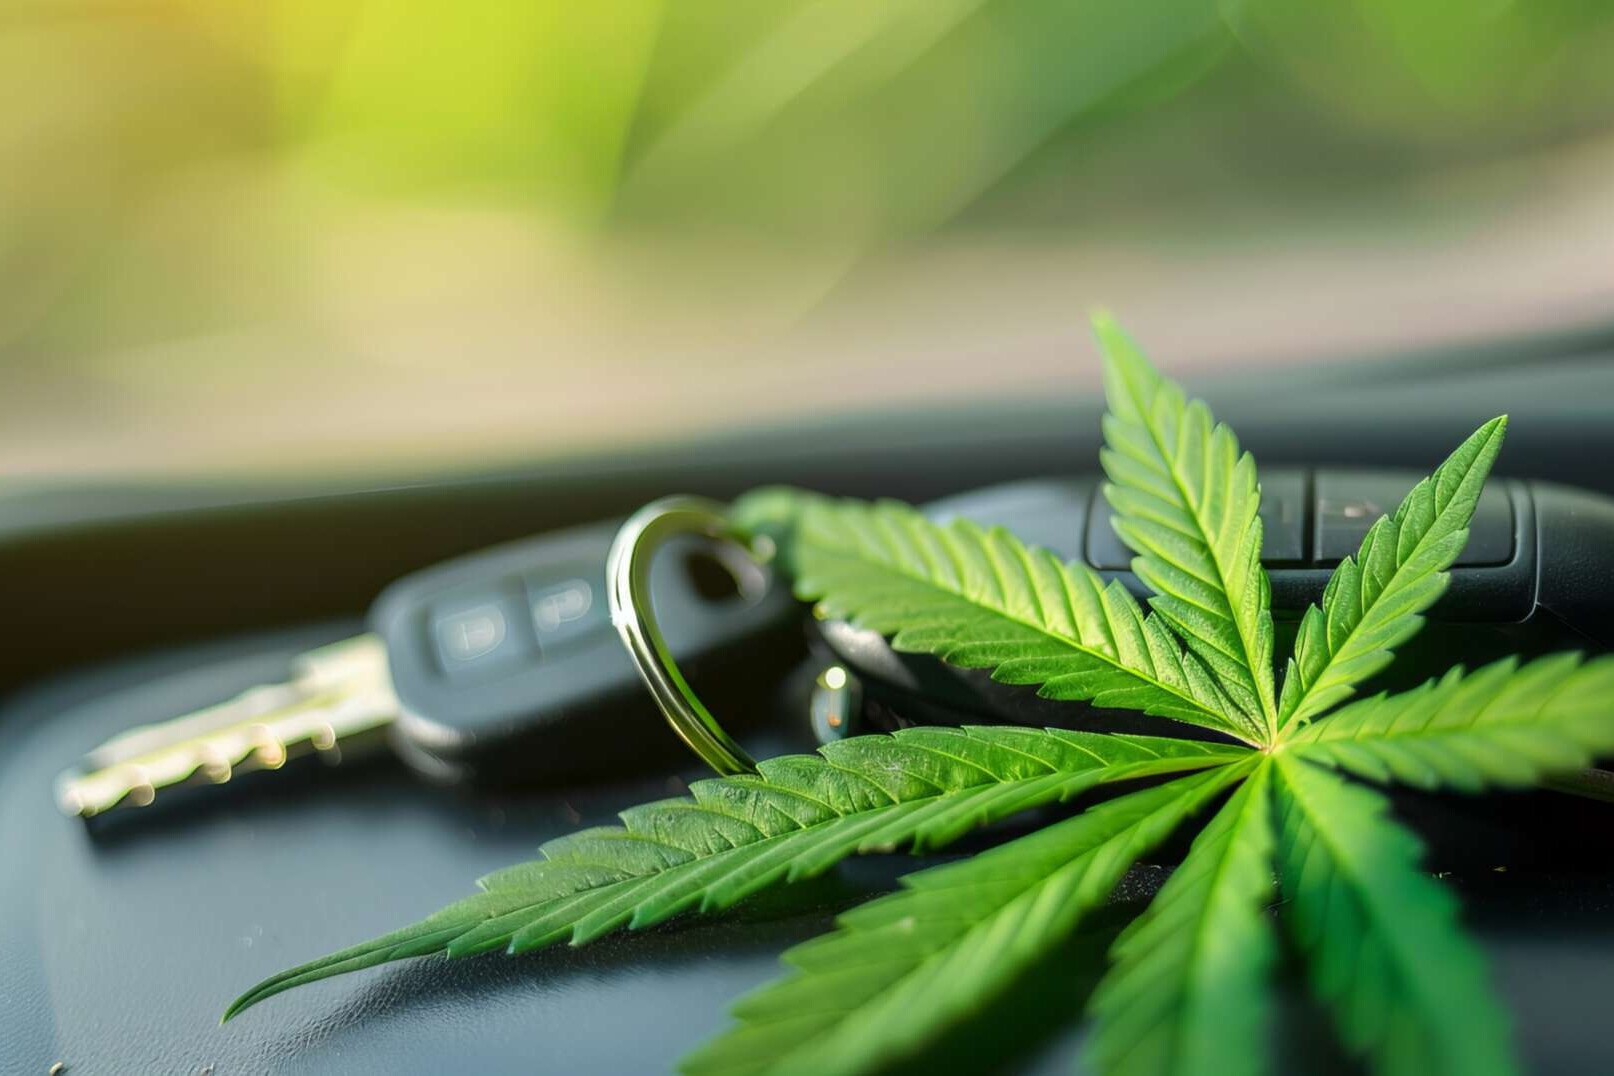 Cannabispflanze mit Autoschlüssel liegen im Pkw.